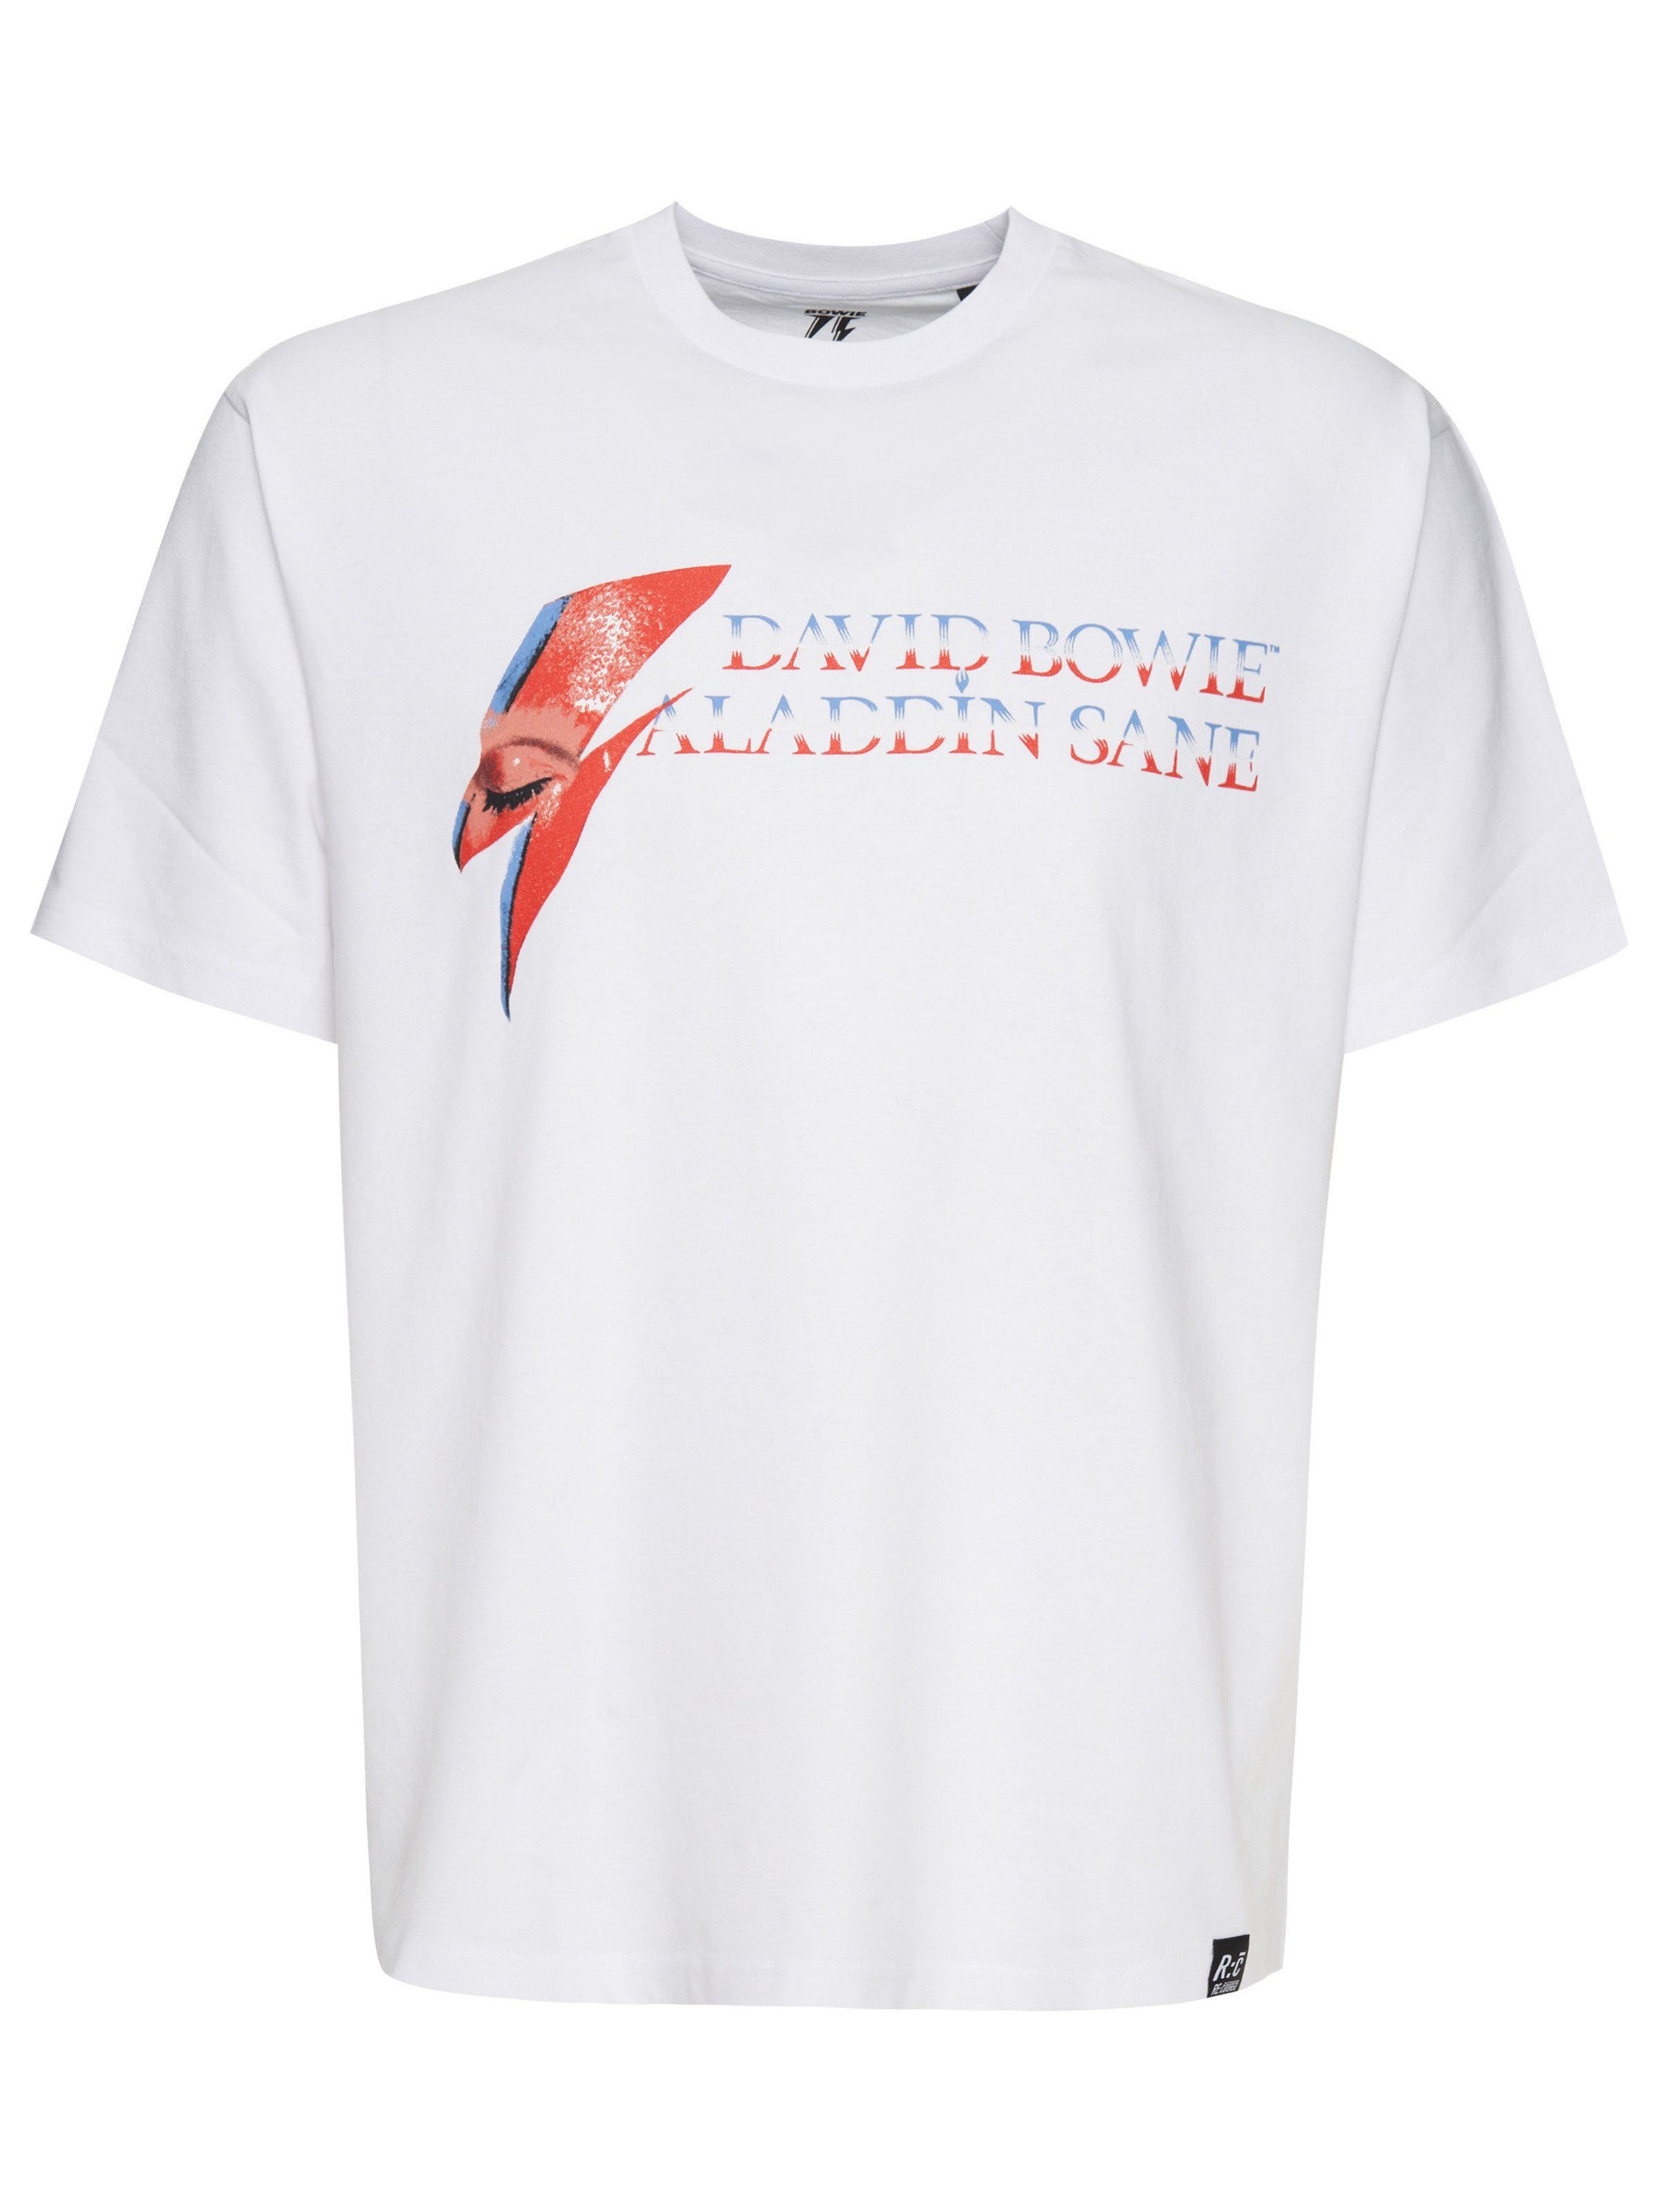 GOTS David Bowie Weiß Recovered T-Shirt Sane Aladdin zertifizierte Bio-Baumwolle Relaxed